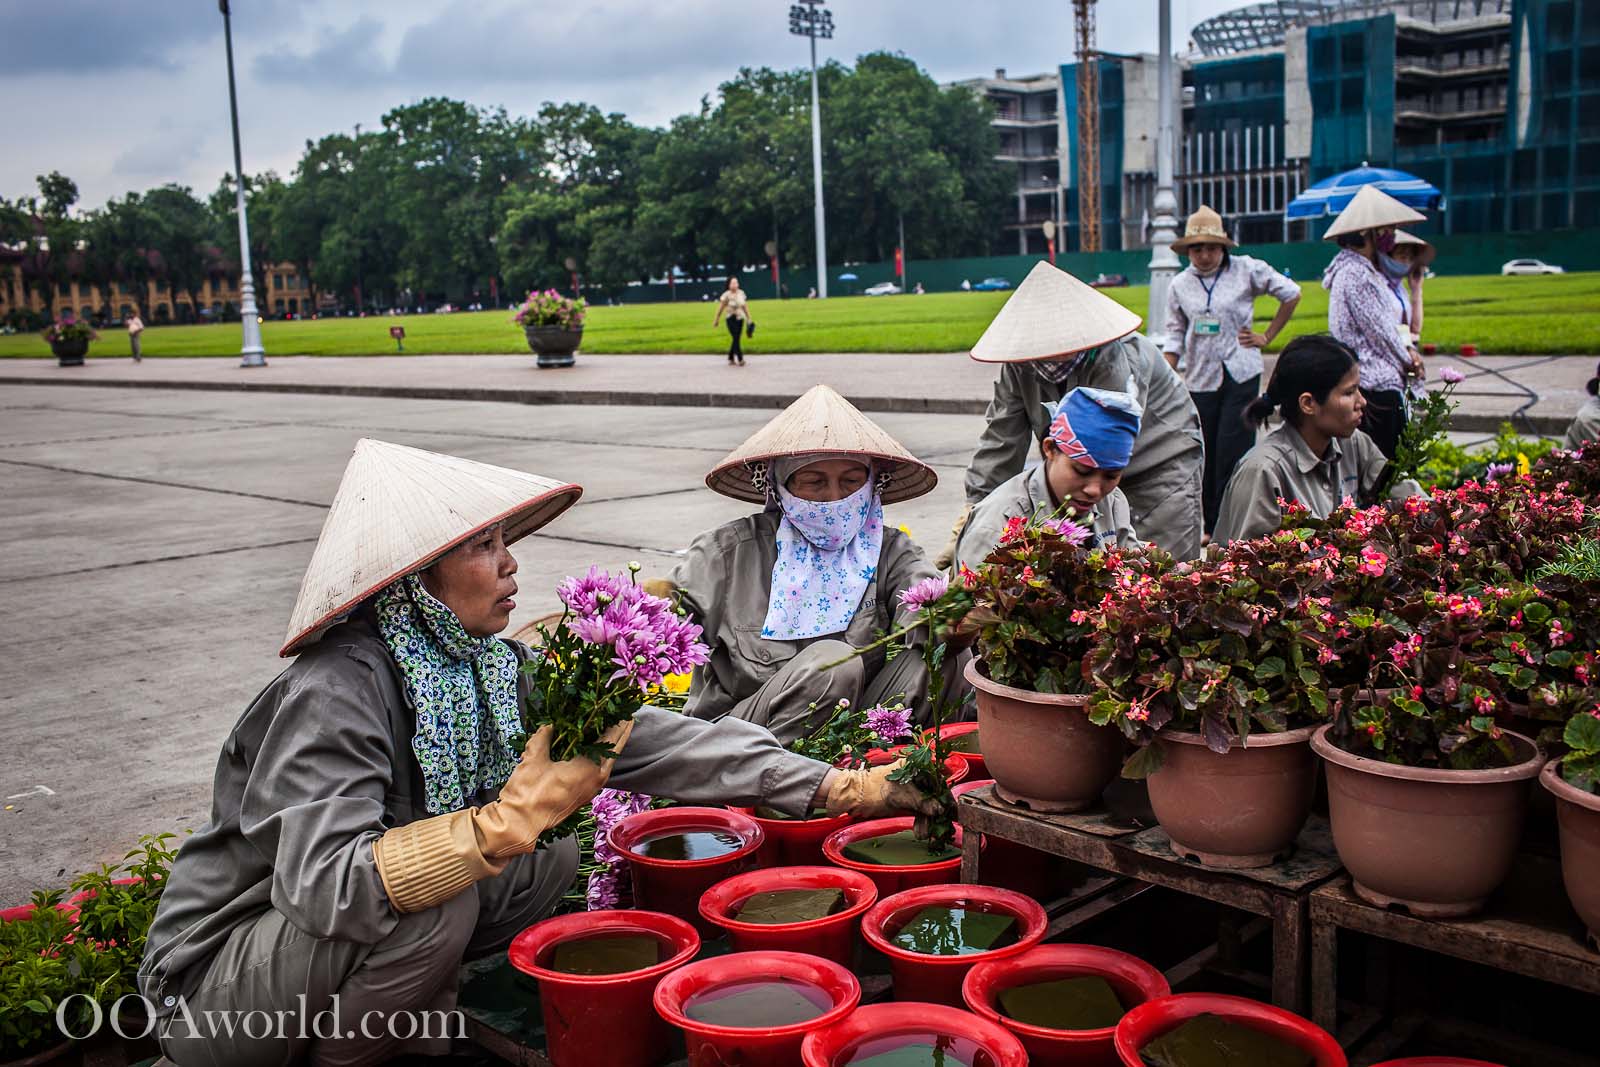 Vietnam State Workers Hanoi Photo Ooaworld